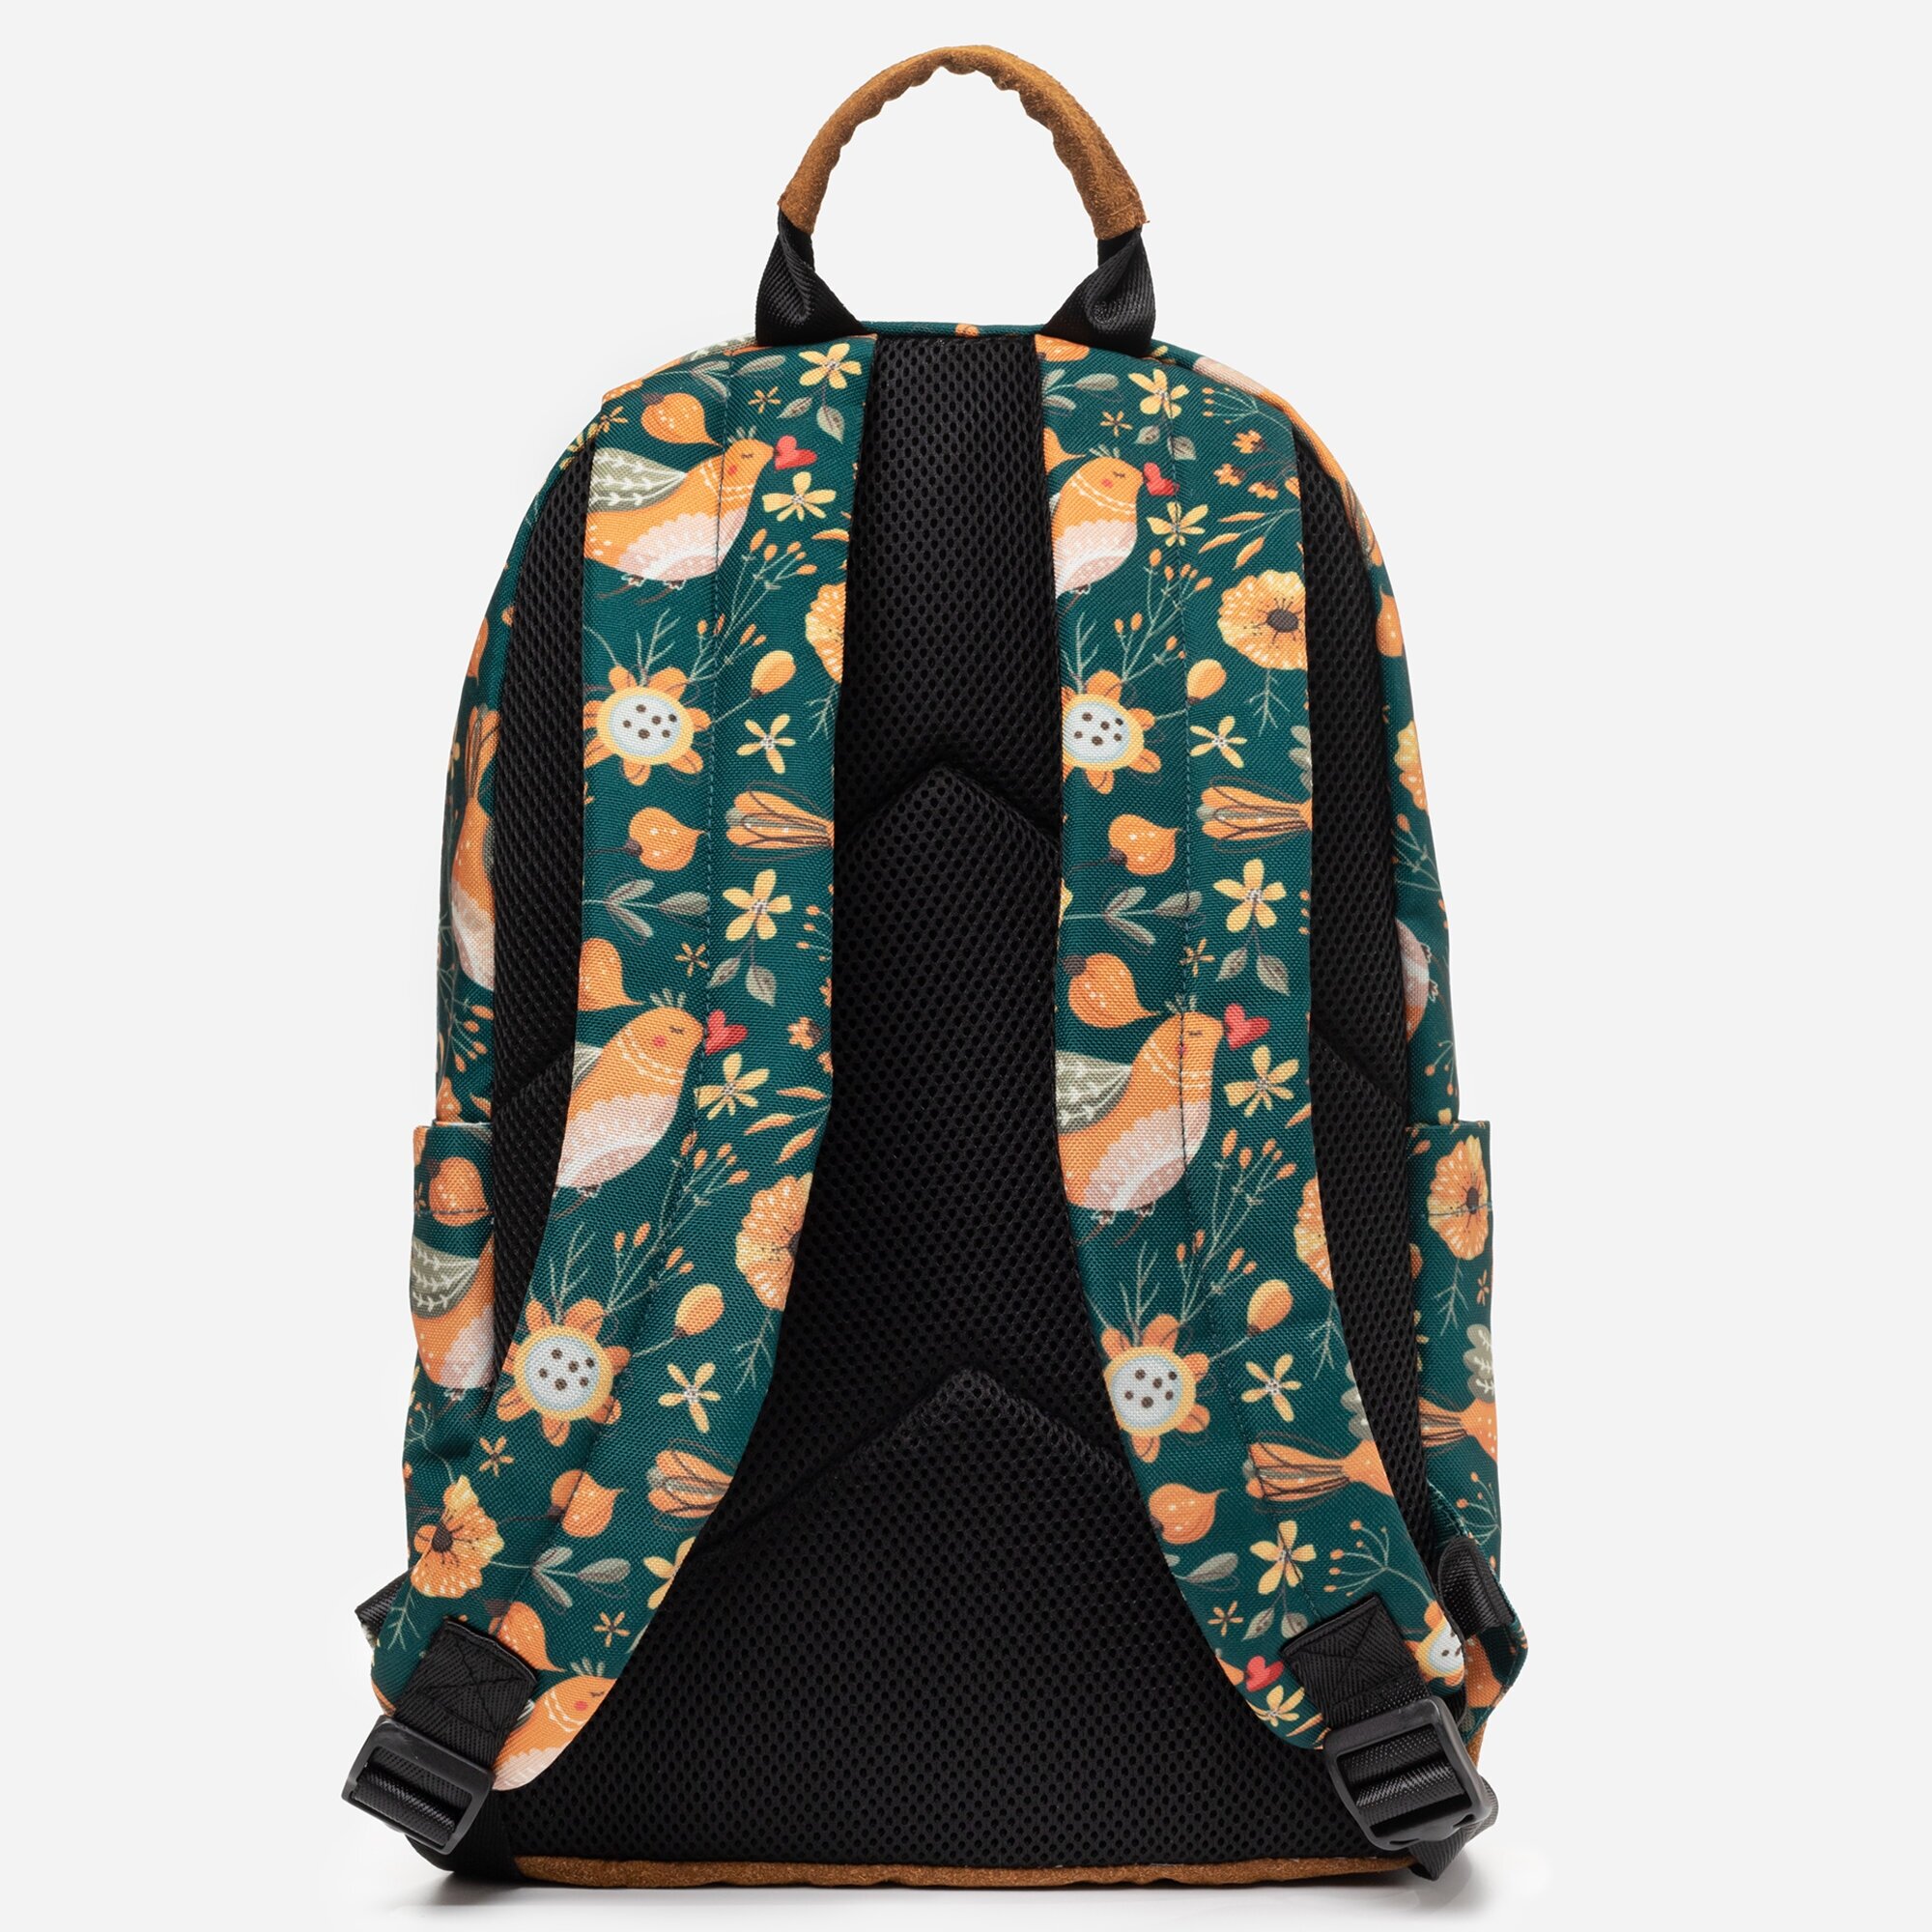 SCOOBE / Рюкзак универсальный городской женский, сумка для ноутбука, рюкзак подростковый школьный с рисунком birdy, 20л